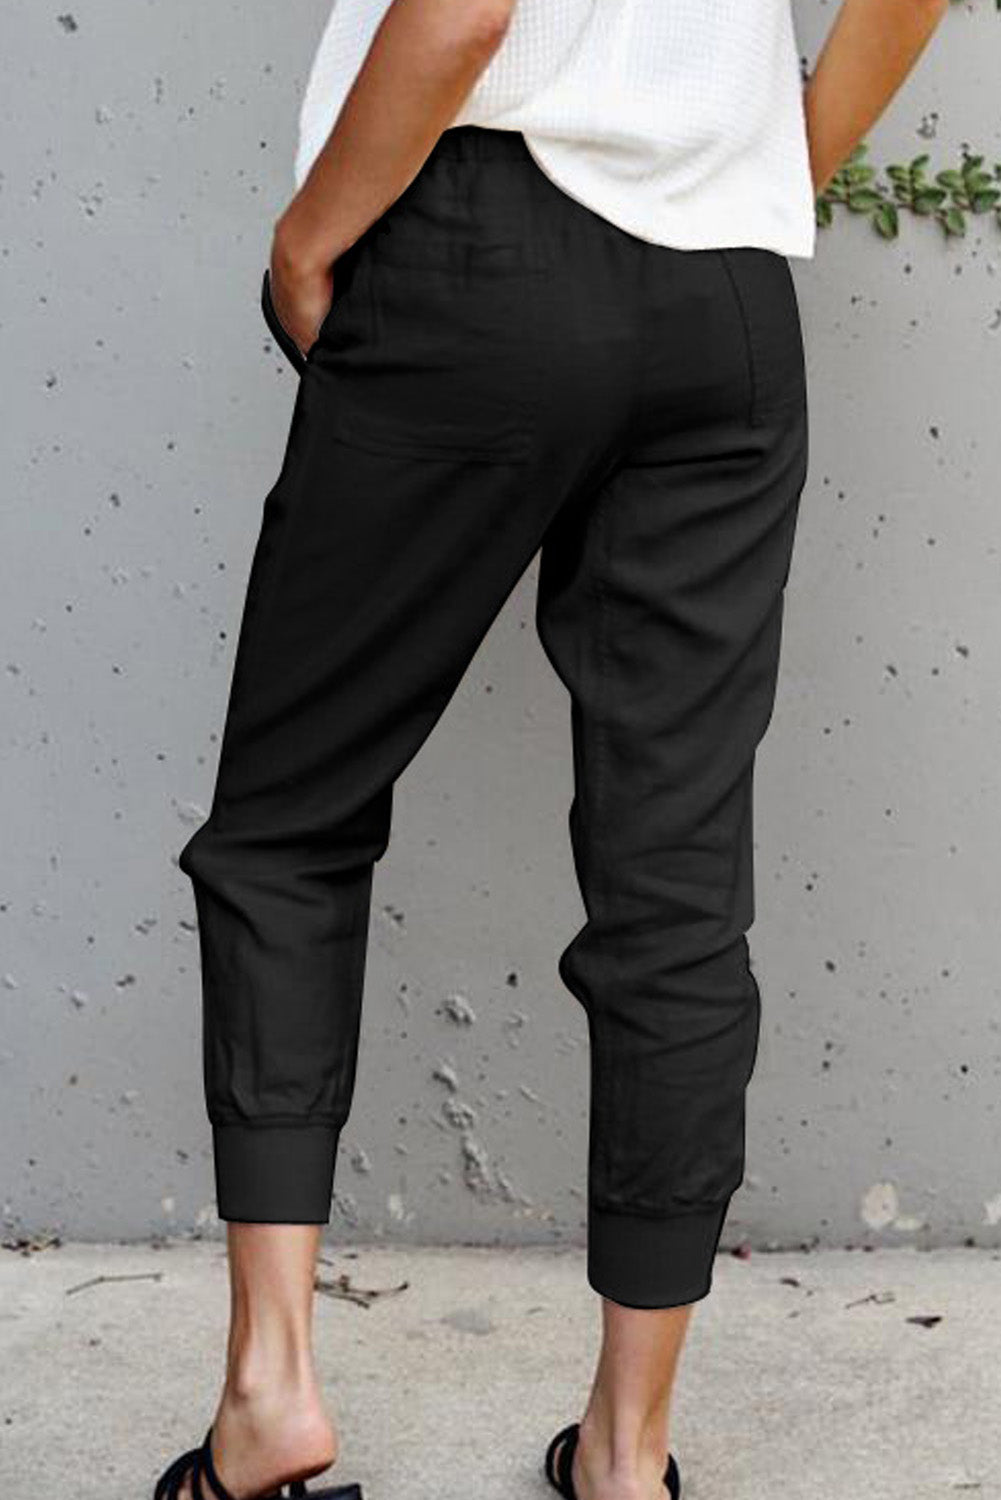 Pantaloni neri con tasche causali